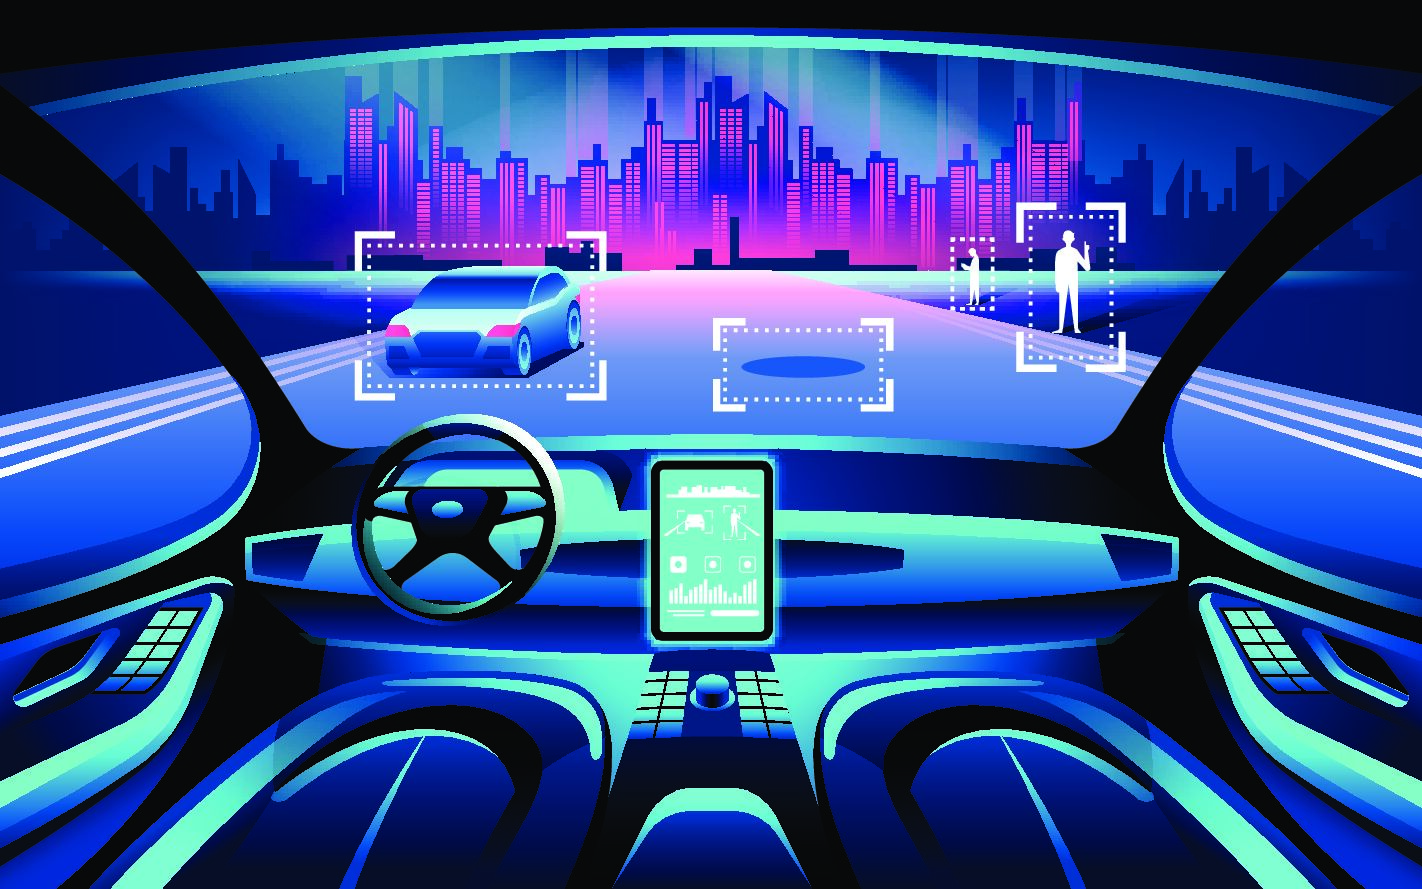 La livraison en voiture autonome est en cours d'expérimentation dans l'Hexagone.